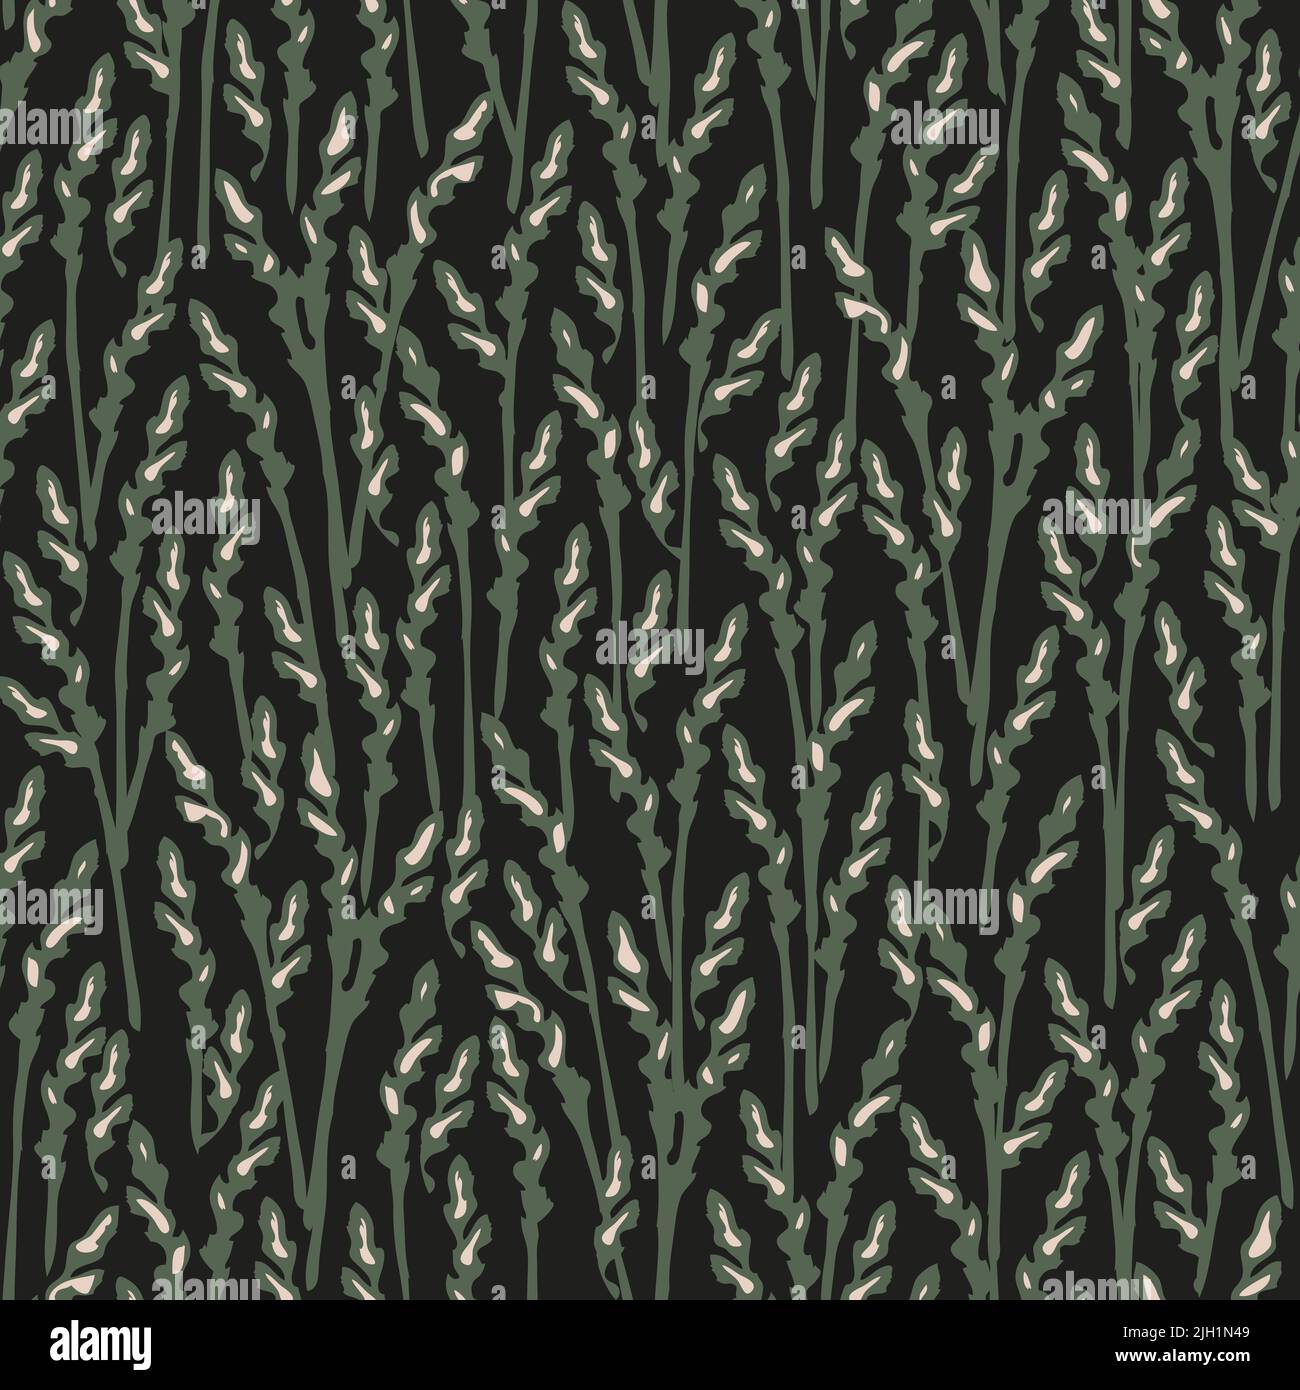 Nahtloses Vektor-Muster mit Graswiese auf schwarzem Hintergrund. Dekoratives Roggen-Muster-Tapetendesign. Grain Field Fashion Textil. Stock Vektor